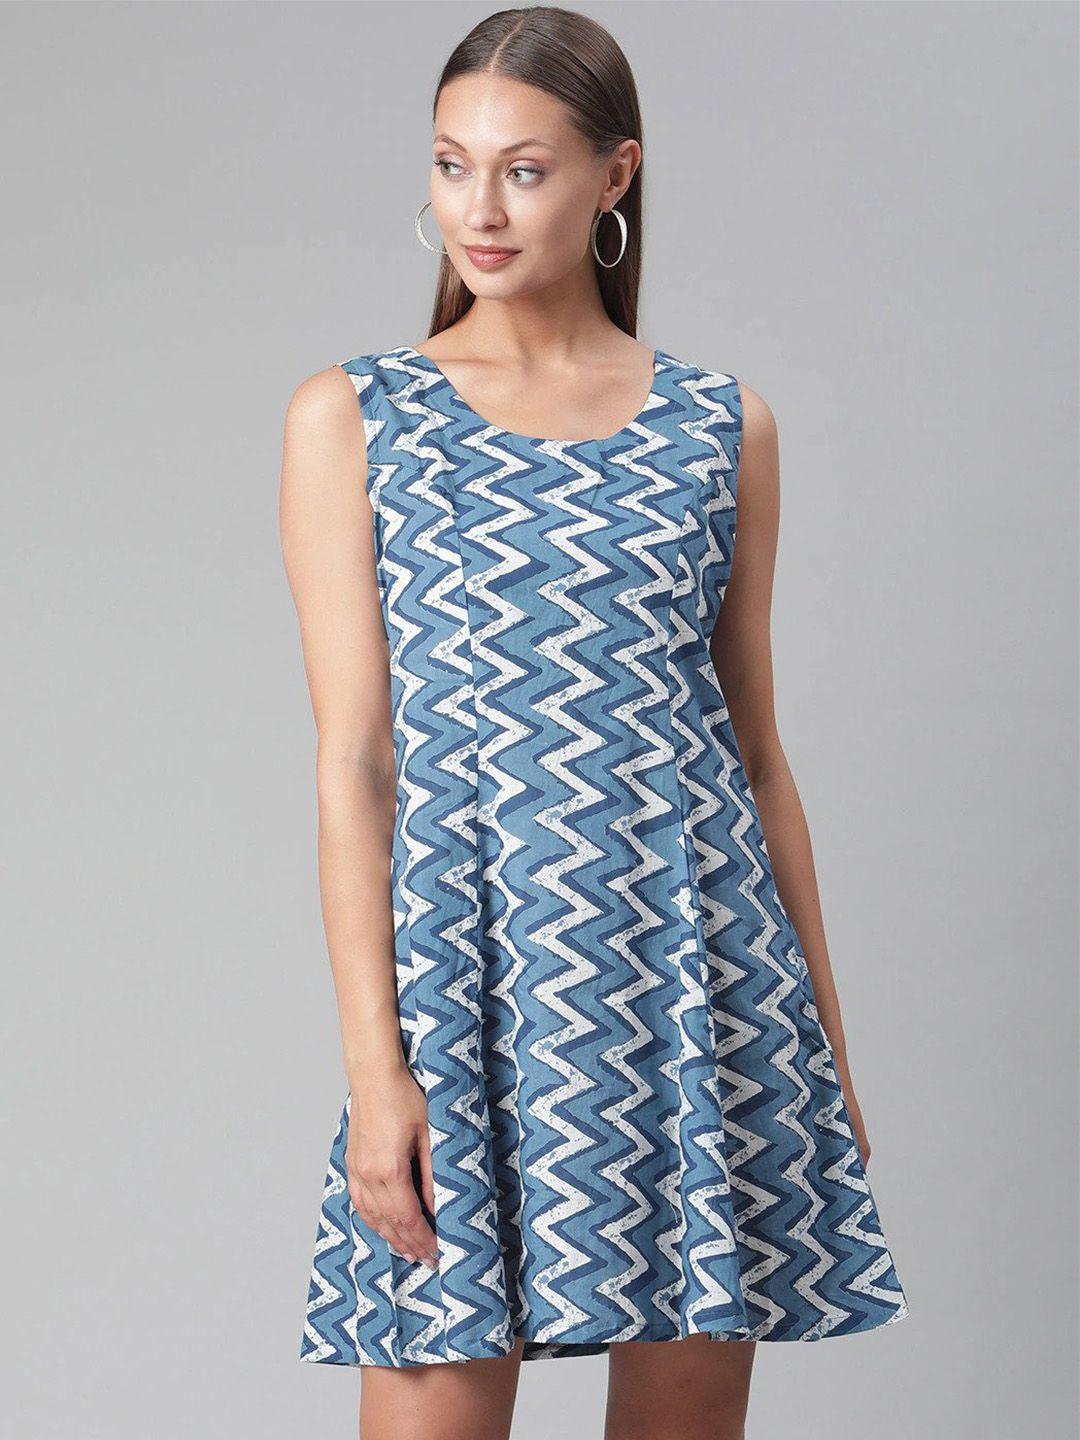 kalini chevron printed cotton a-line dress